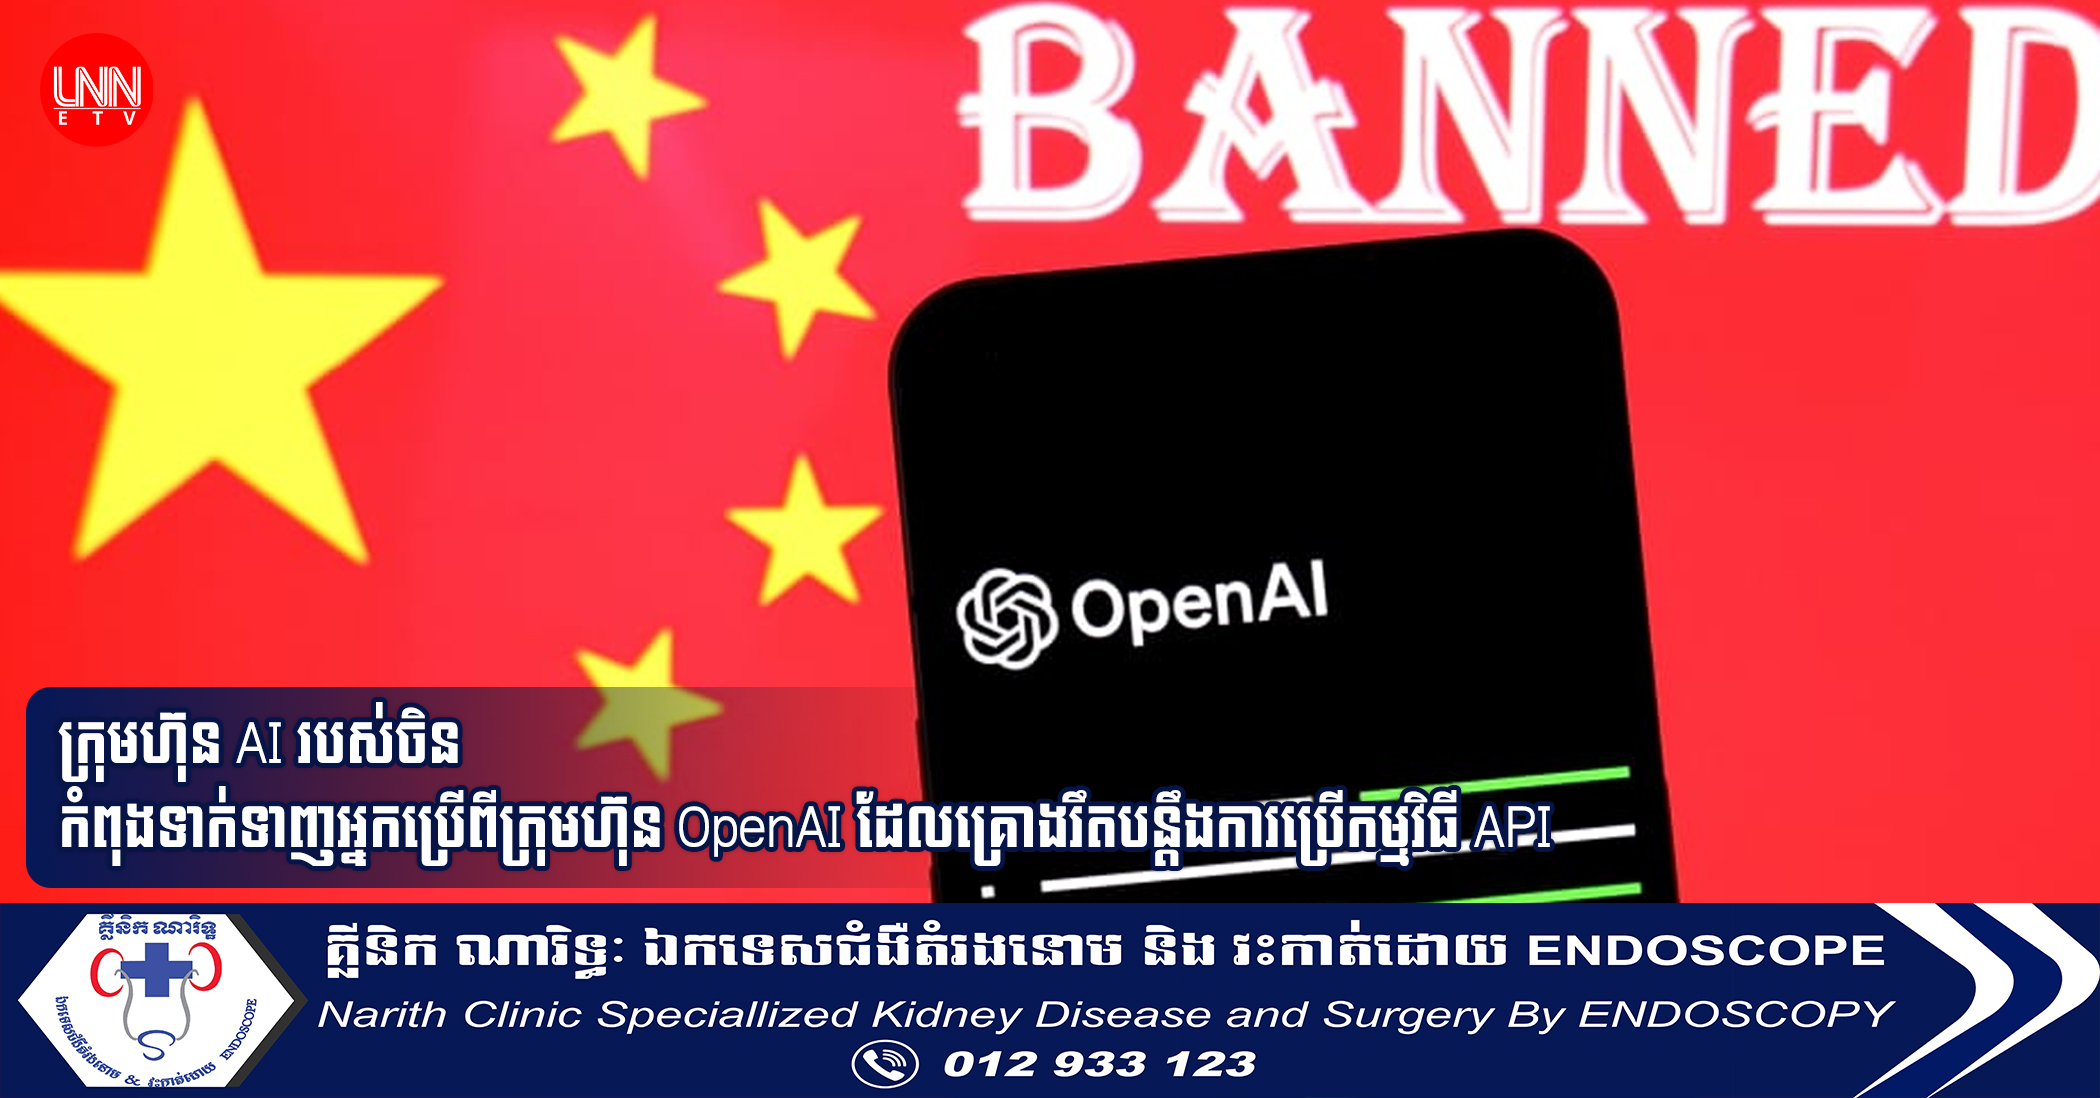 ក្រុមហ៊ុន AI របស់ចិន កំពុងទាក់ទាញអ្នកប្រើពីក្រុមហ៊ុន OpenAI ដែលគ្រោងរឹតបន្តឹងការប្រើកម្មវិធី API